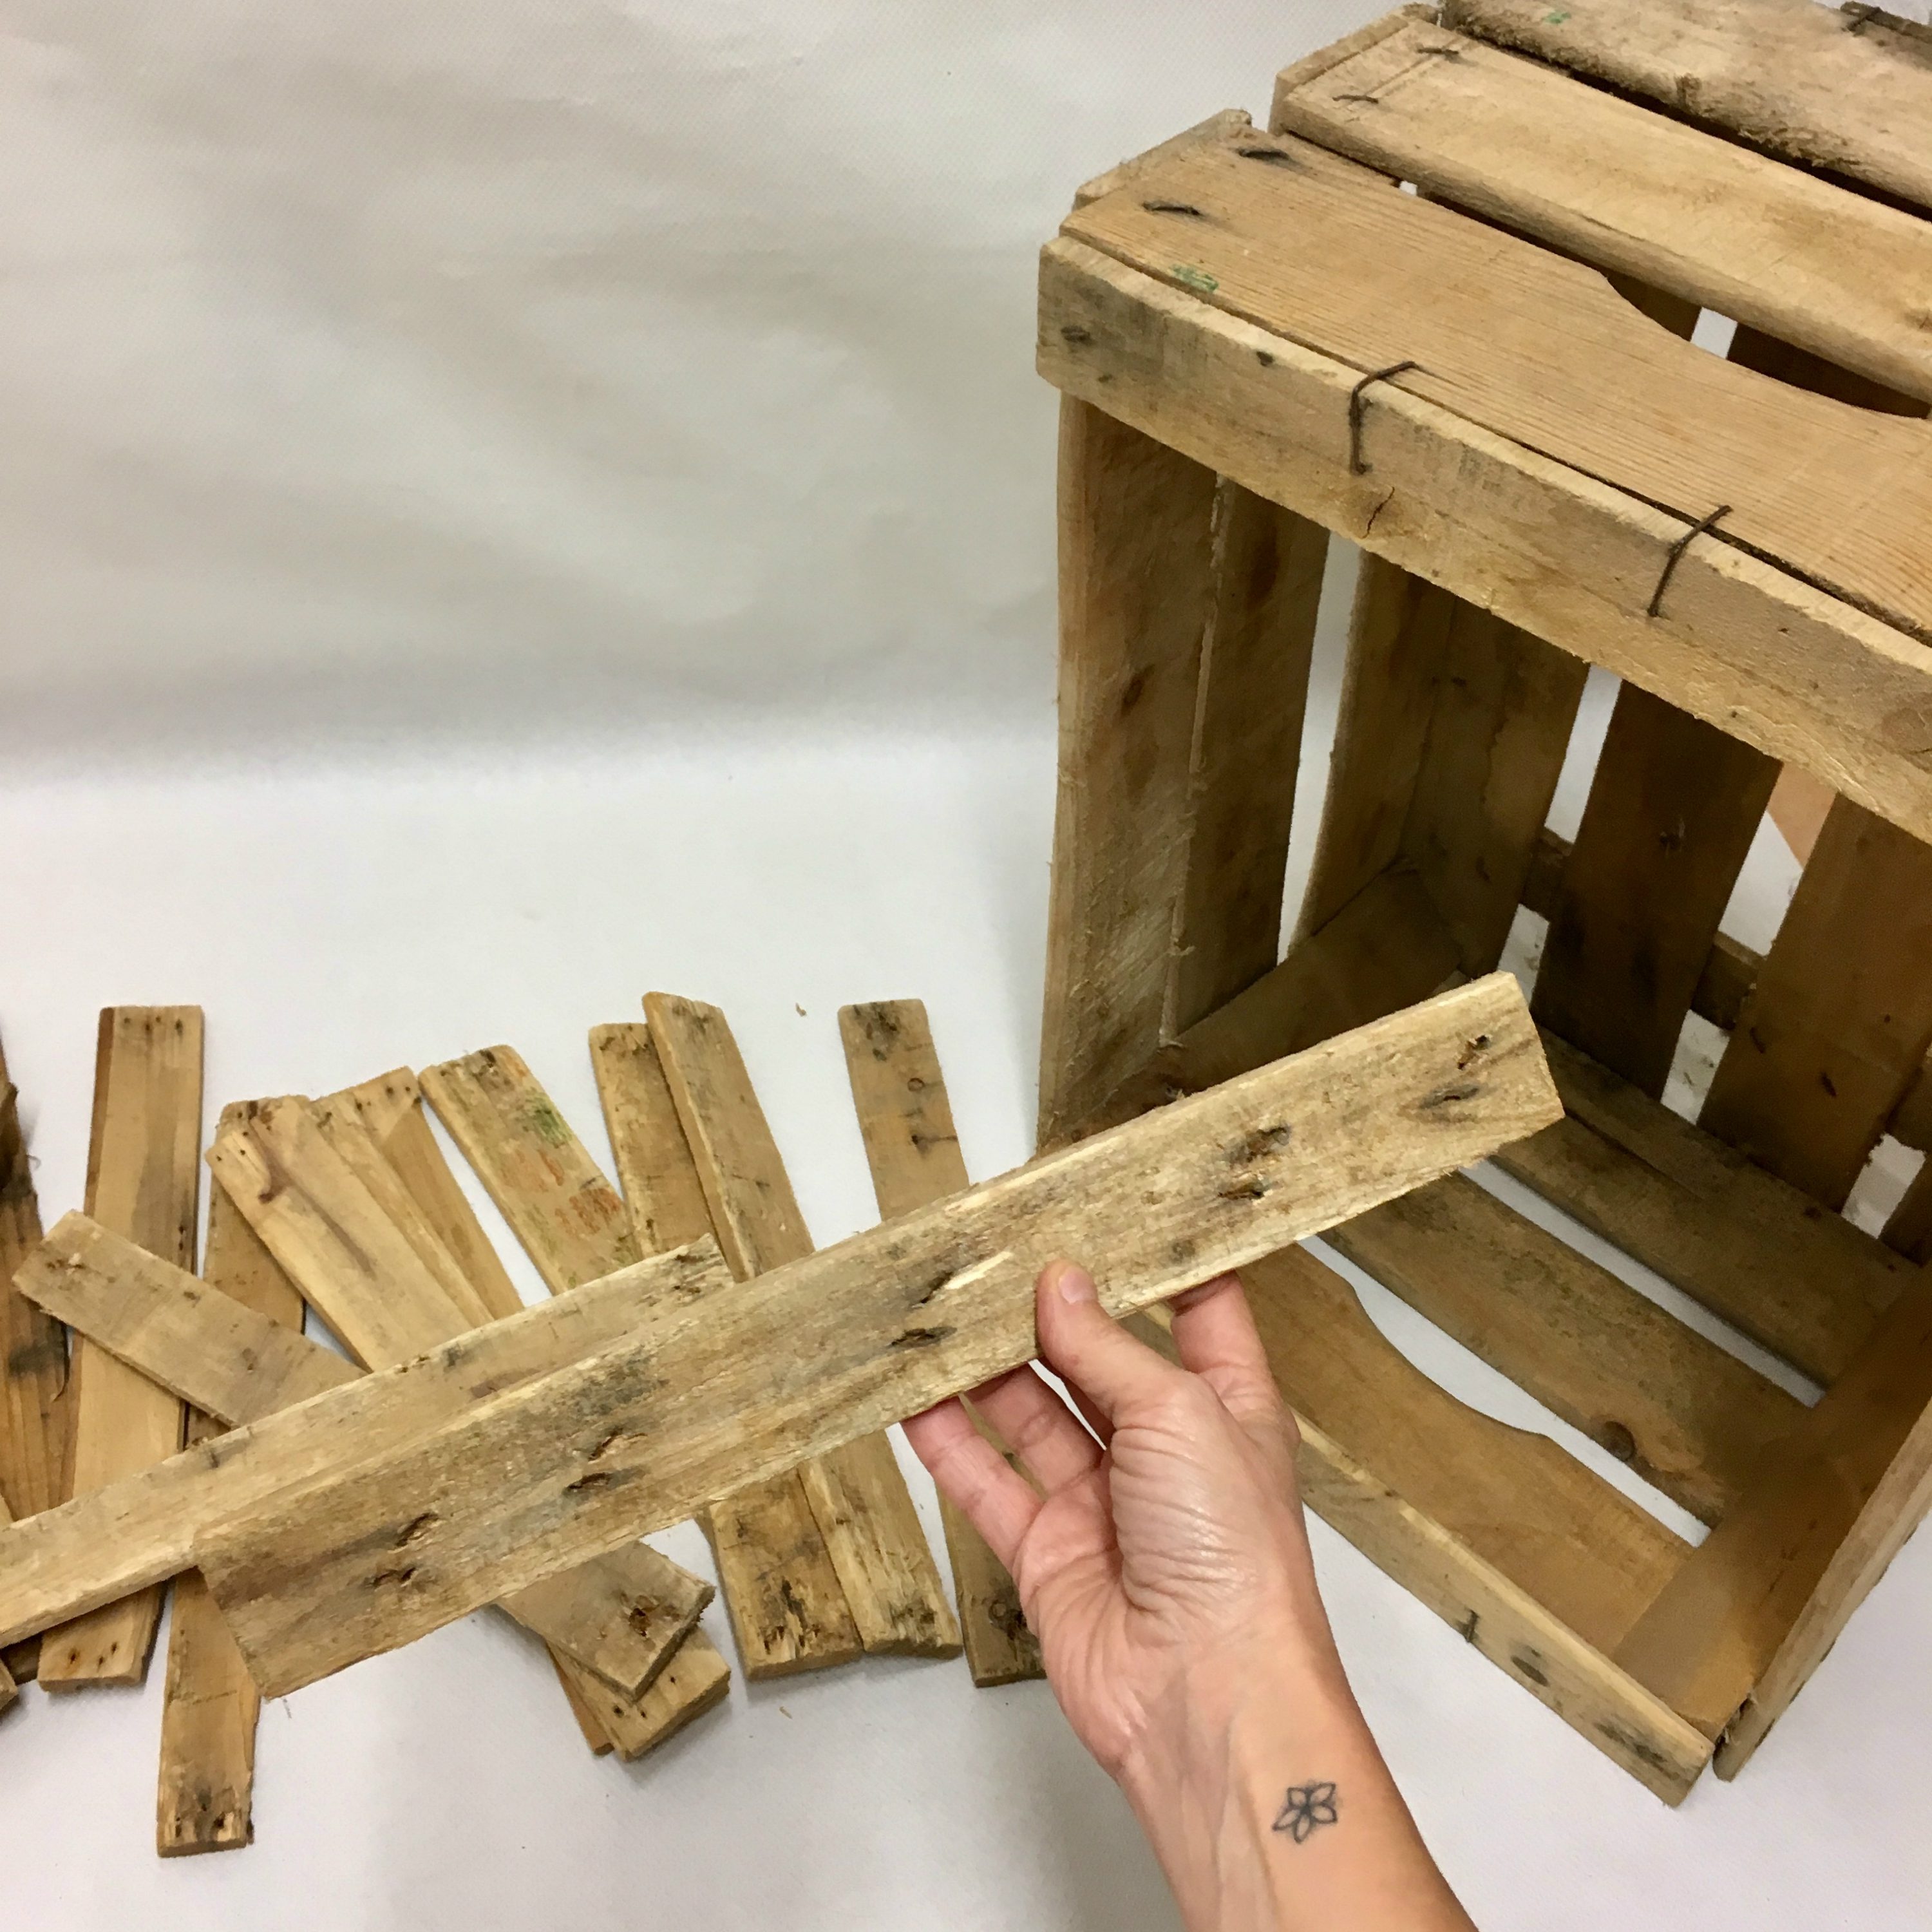 Algunas ideas para decorar con cajas de madera ¡Atrévete! DIY